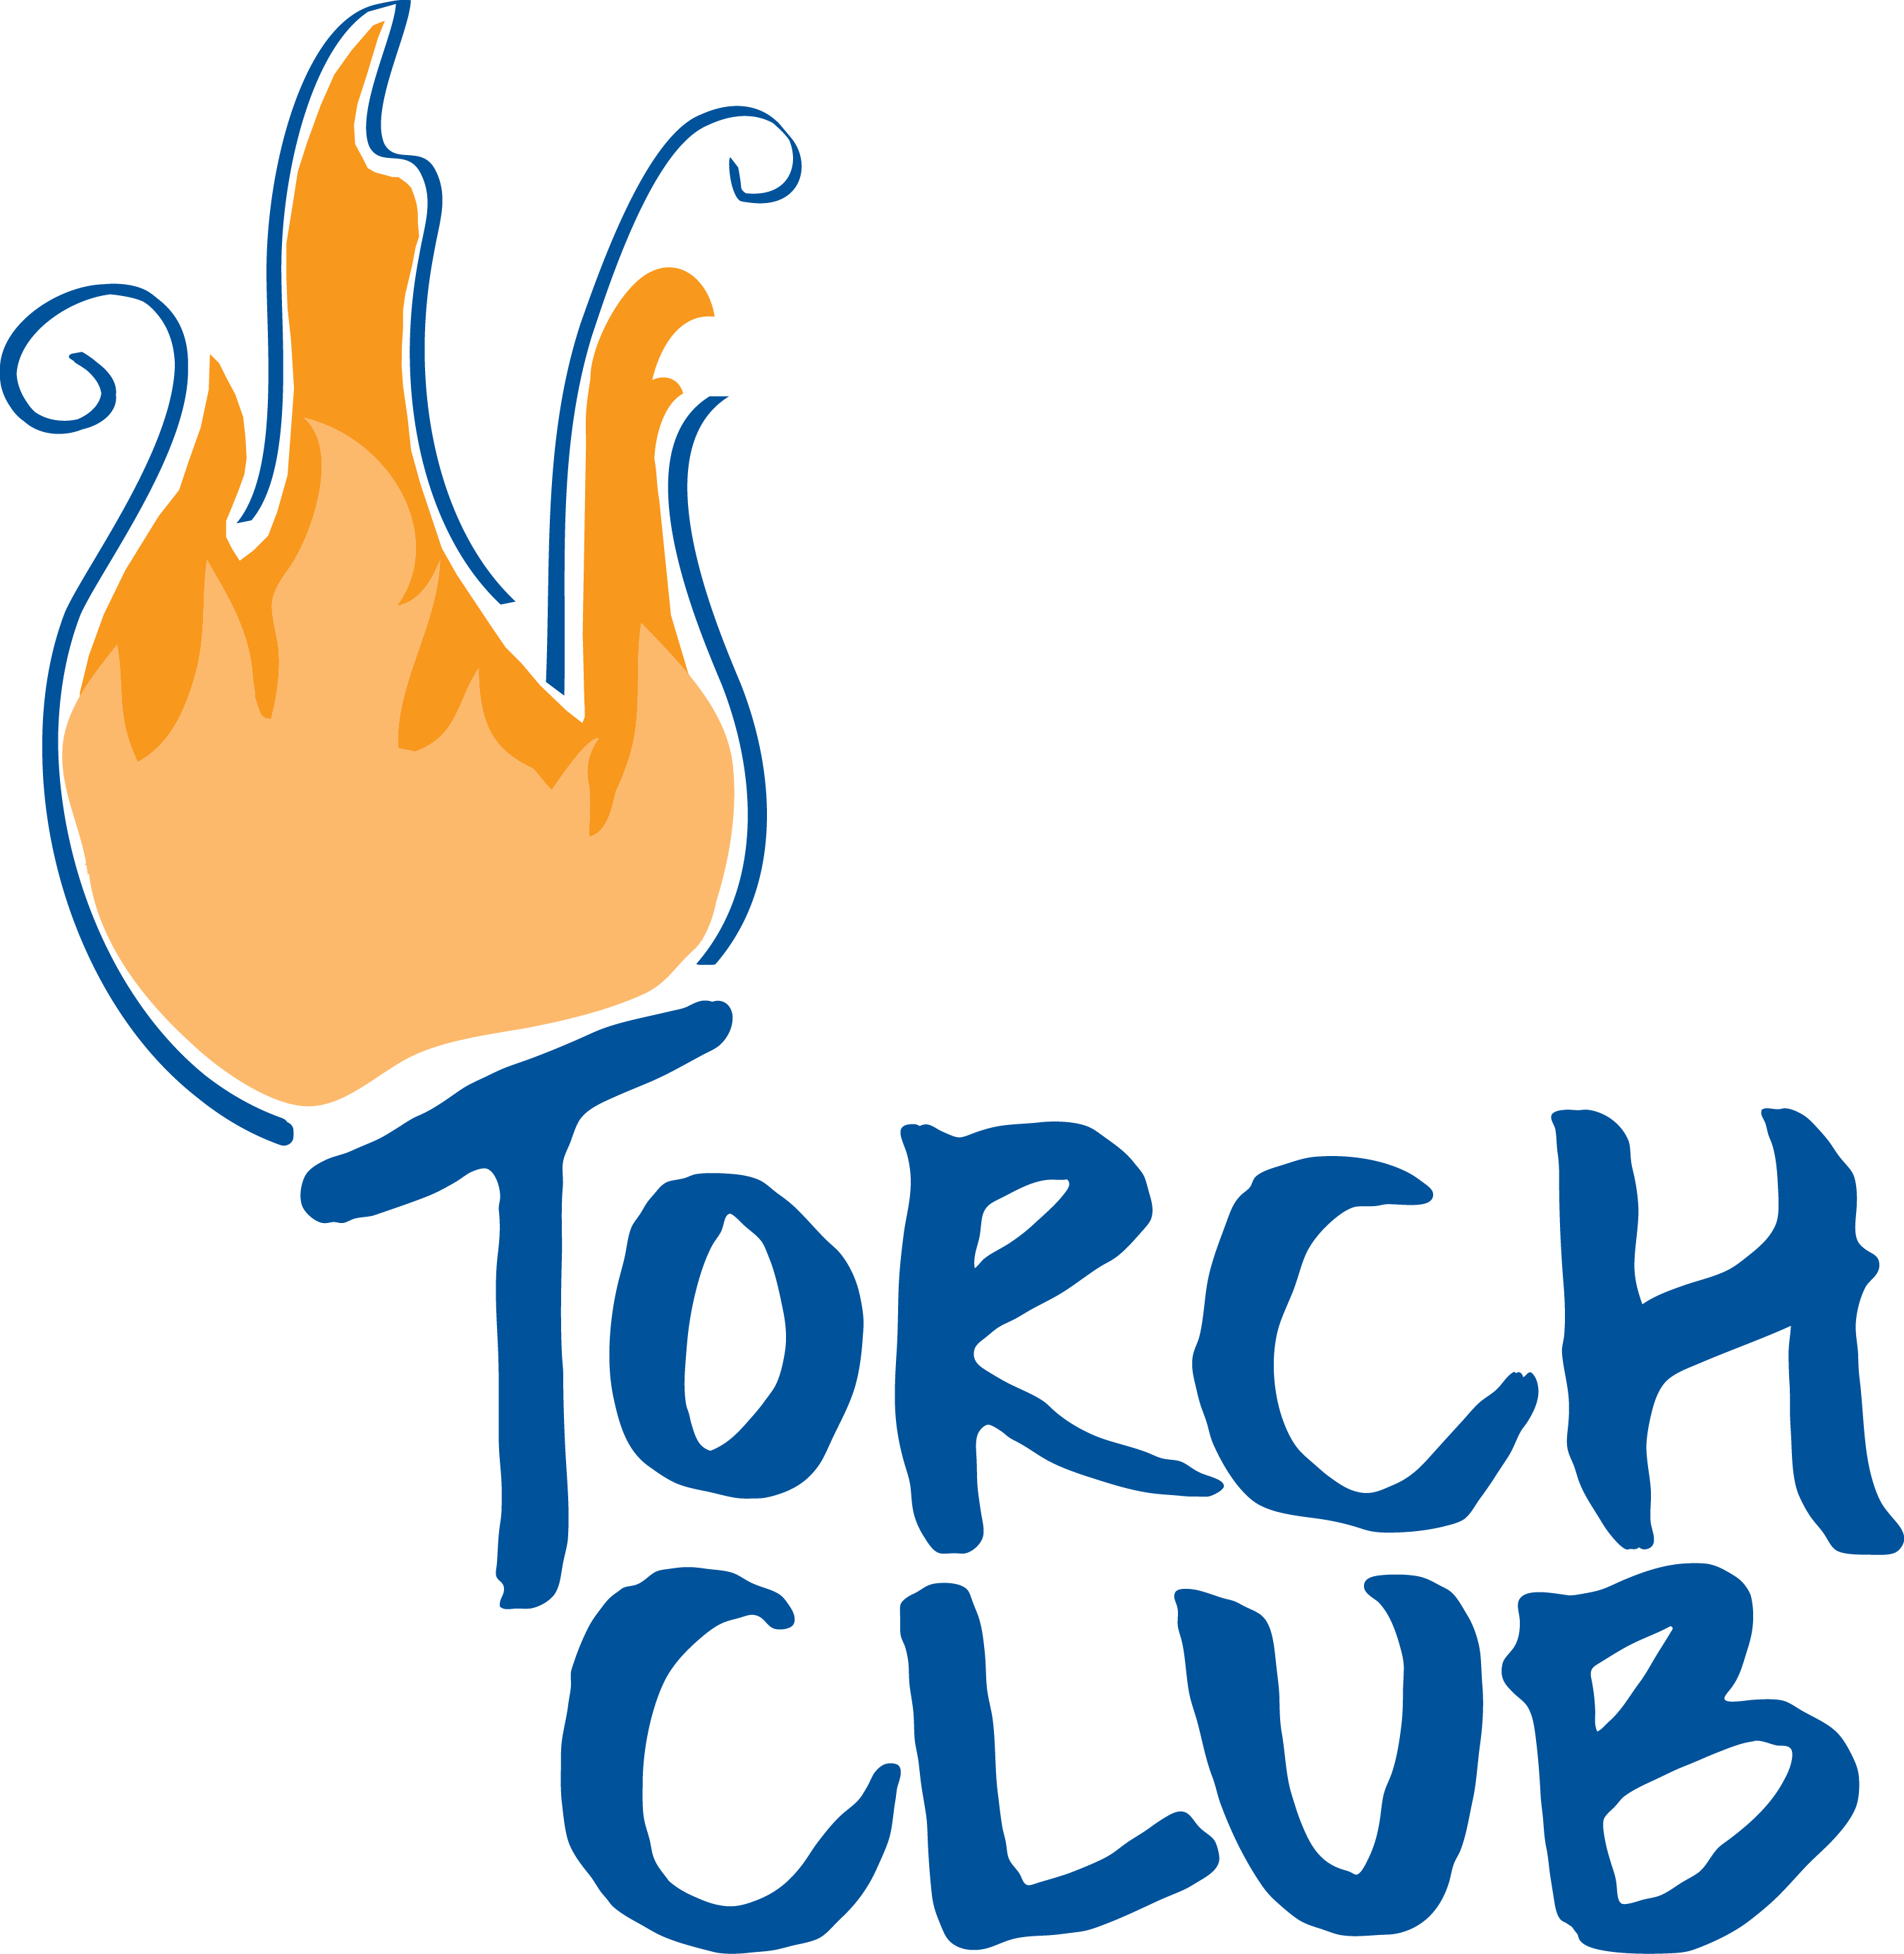 Torch Club Clr - Boys And Girls Club Torch Club (2701x2772), Png Download